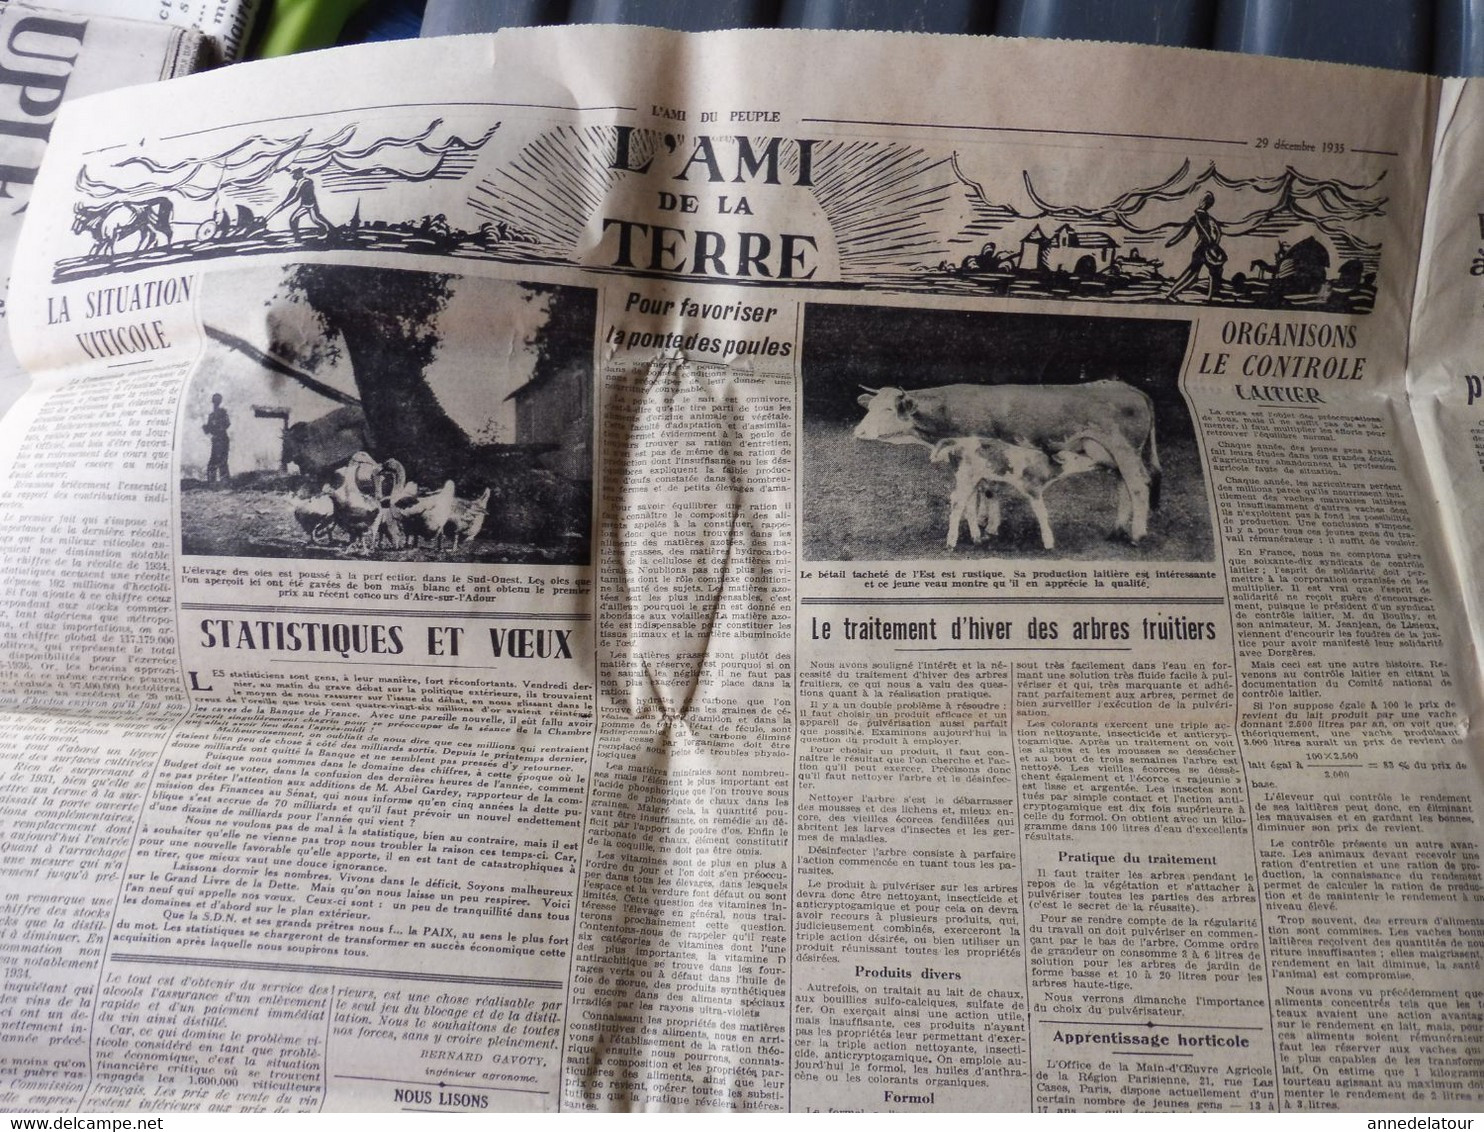 1935 L'AMI DU PEUPLE: Journée nationale des Scouts de France ;Le Bourget ;Le roi des belges ;Scandale du Trocadero ; Etc